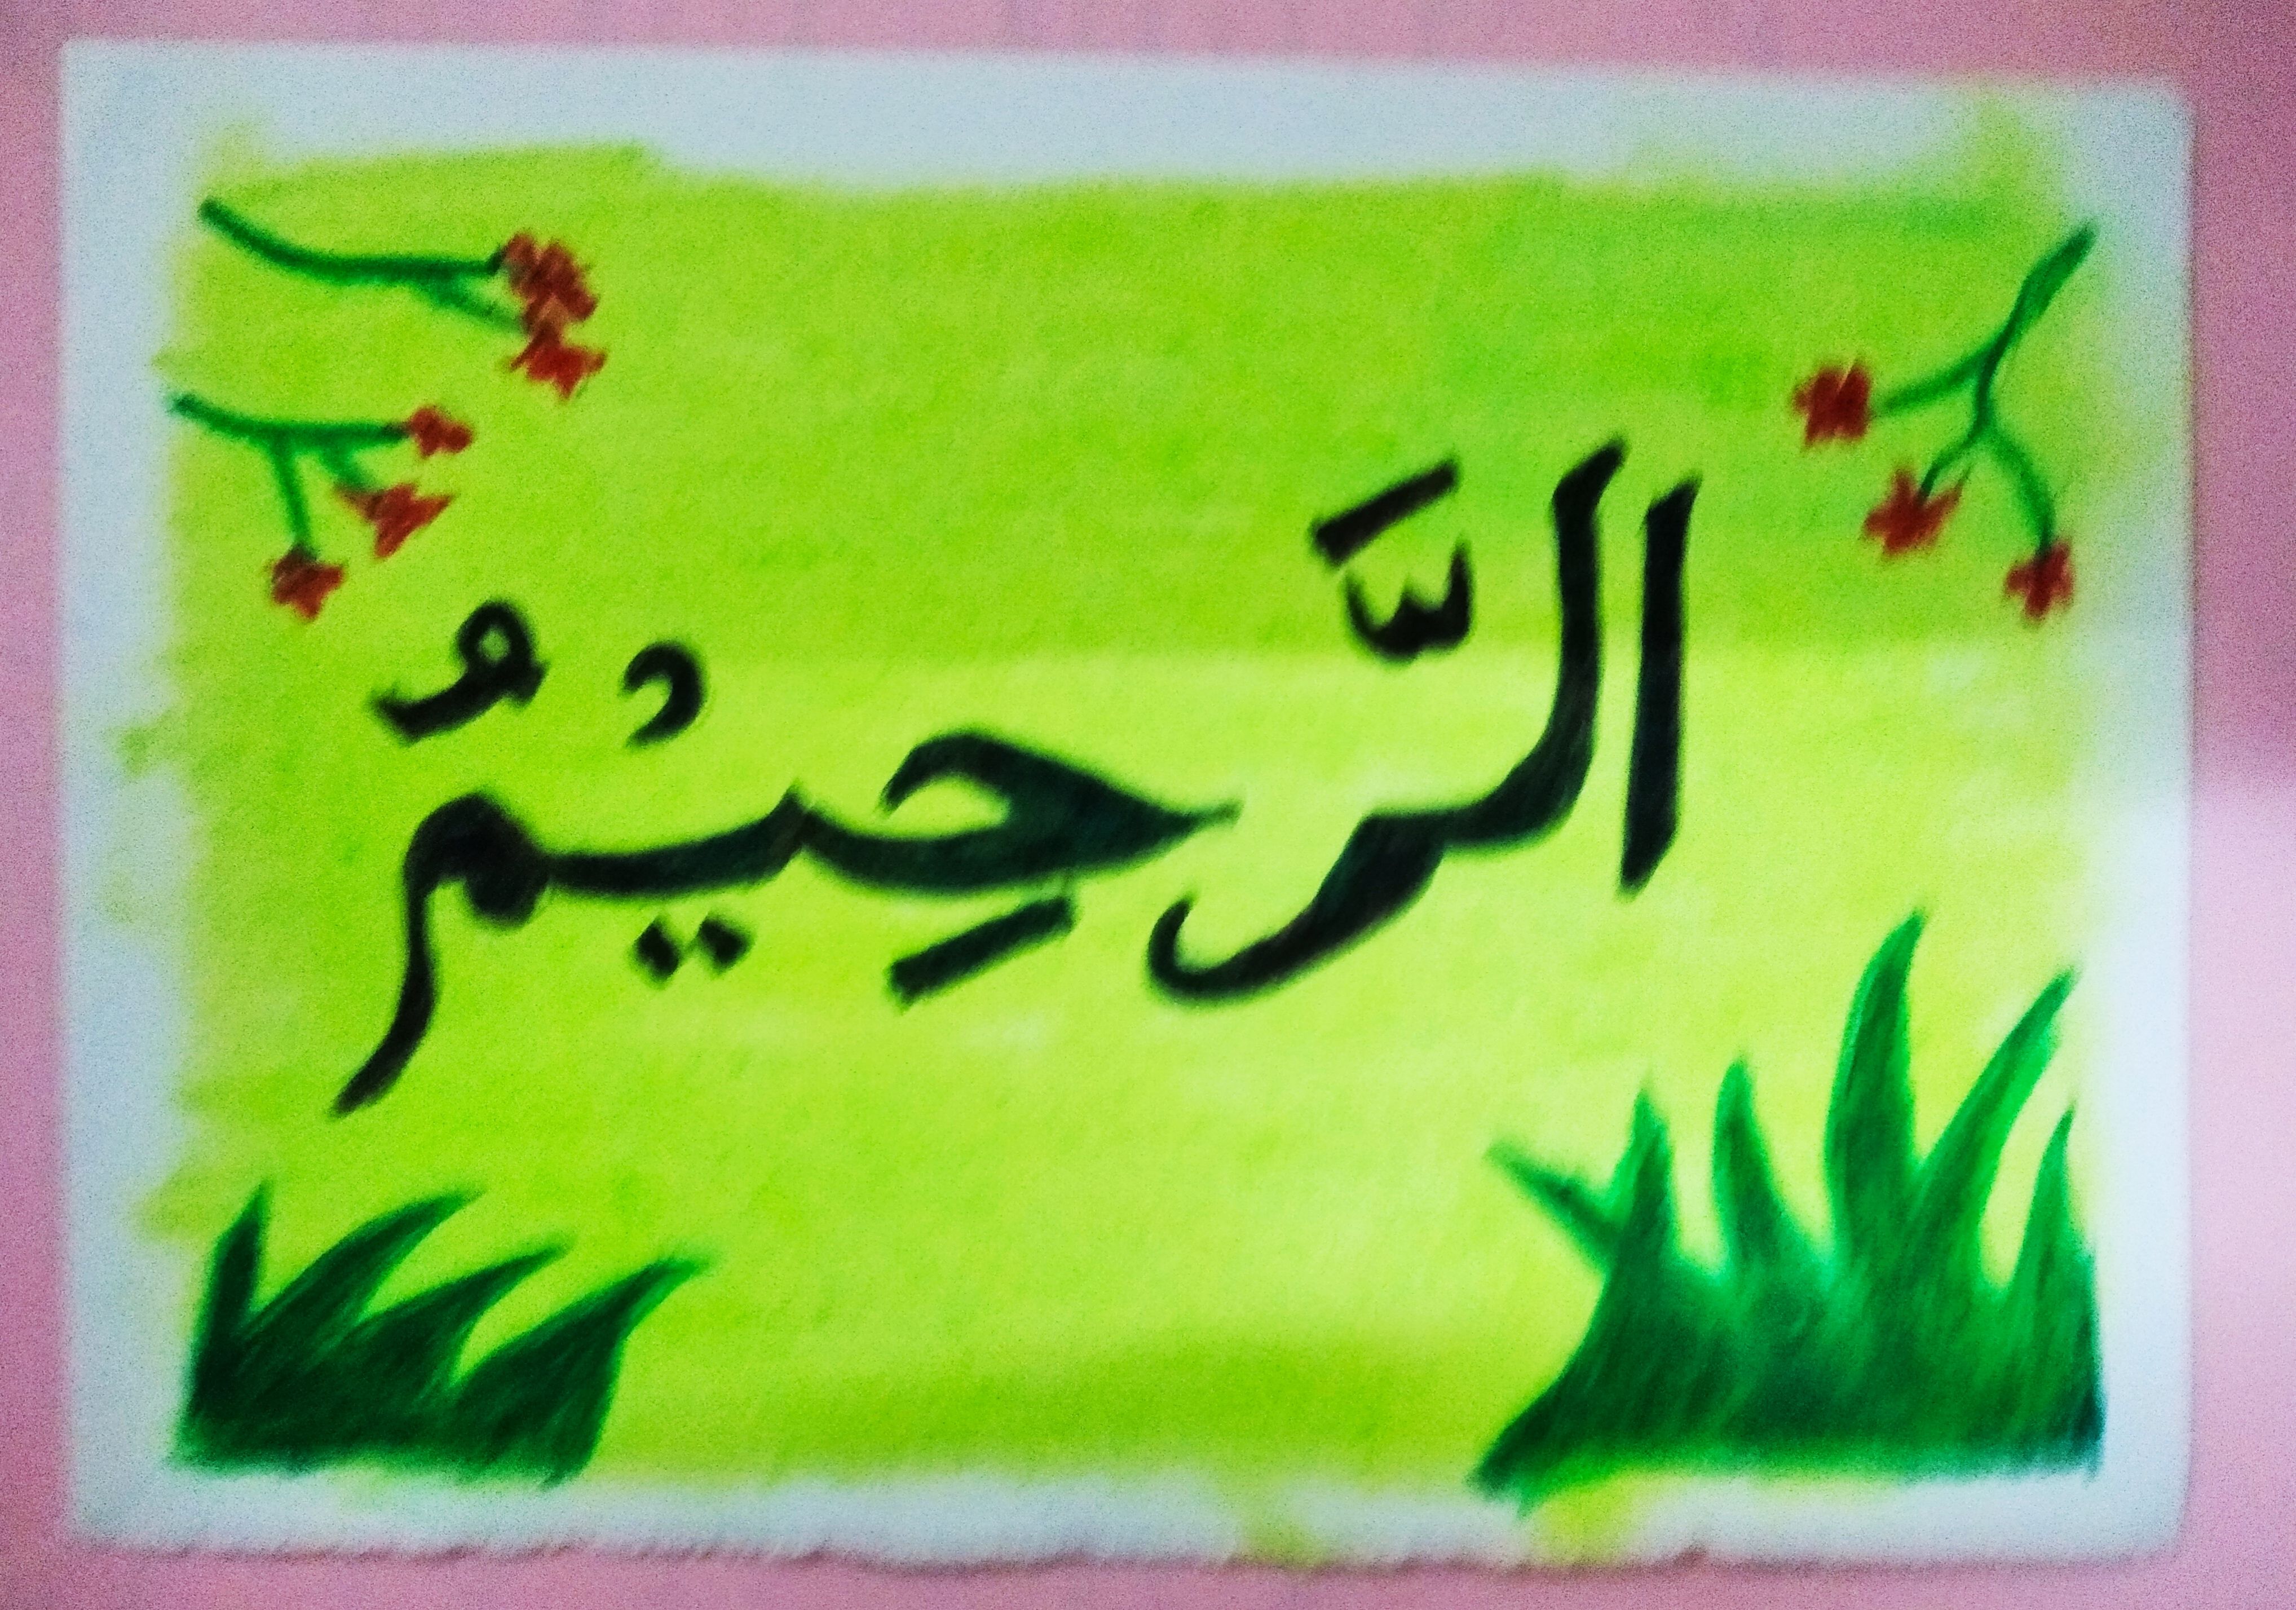 Foto Artikel : Menggambar Kaligrafi Asmaul Husna Selama Ramadan -  Kompasiana.com